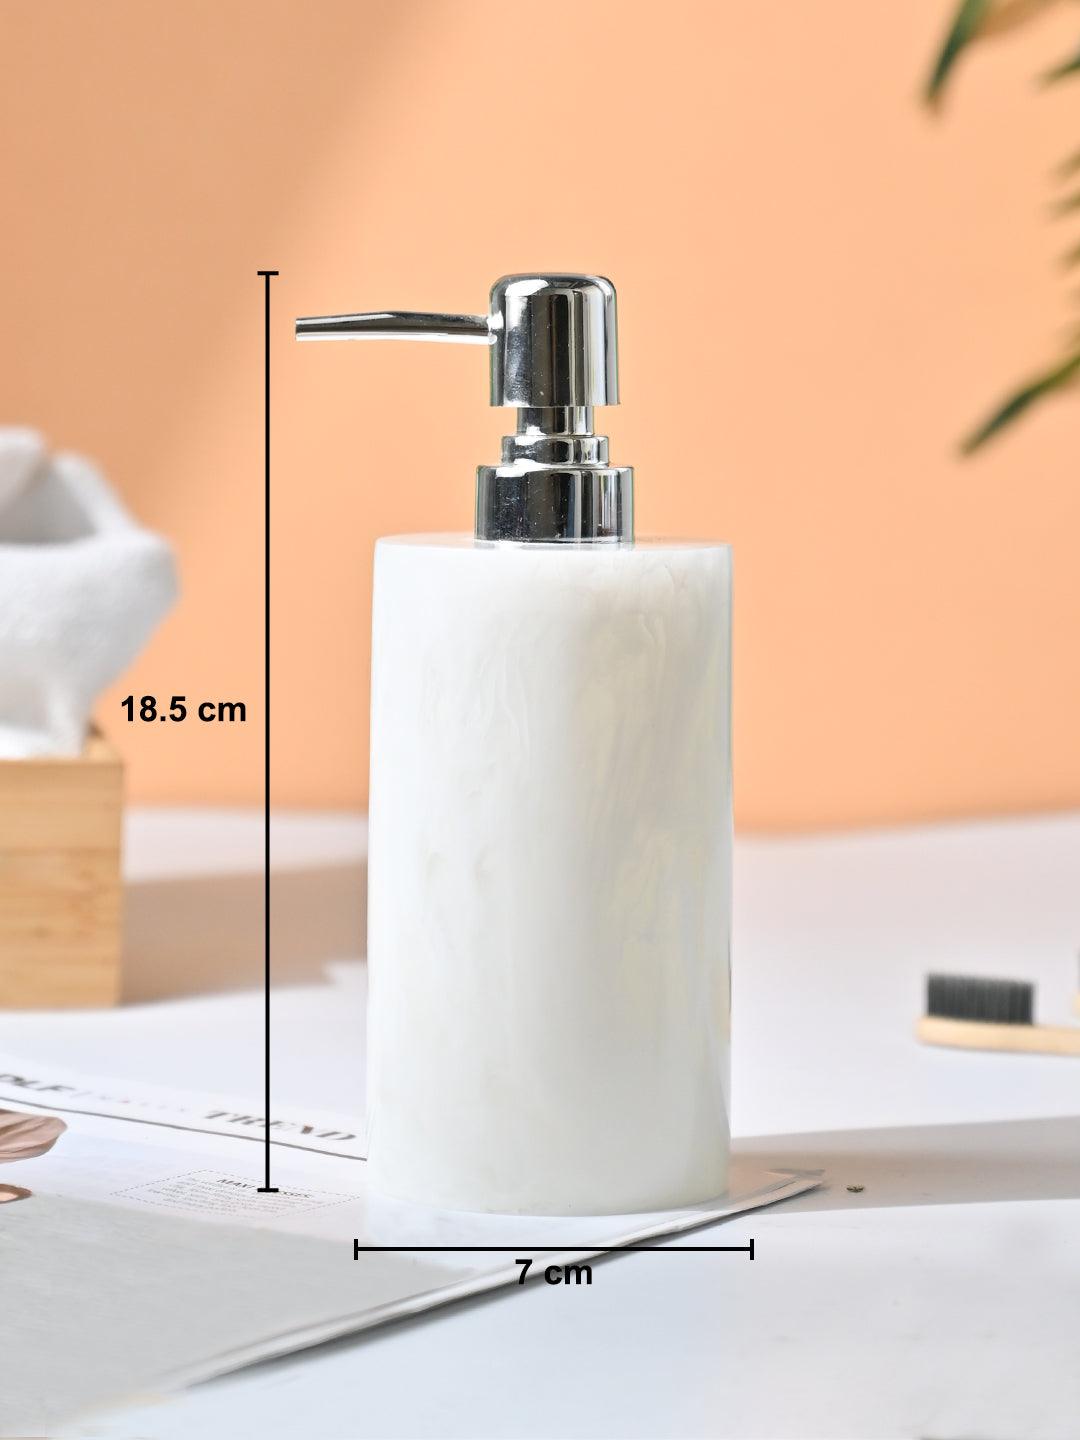 VON CASA White Soap Dispenser - 400Ml - MARKET99